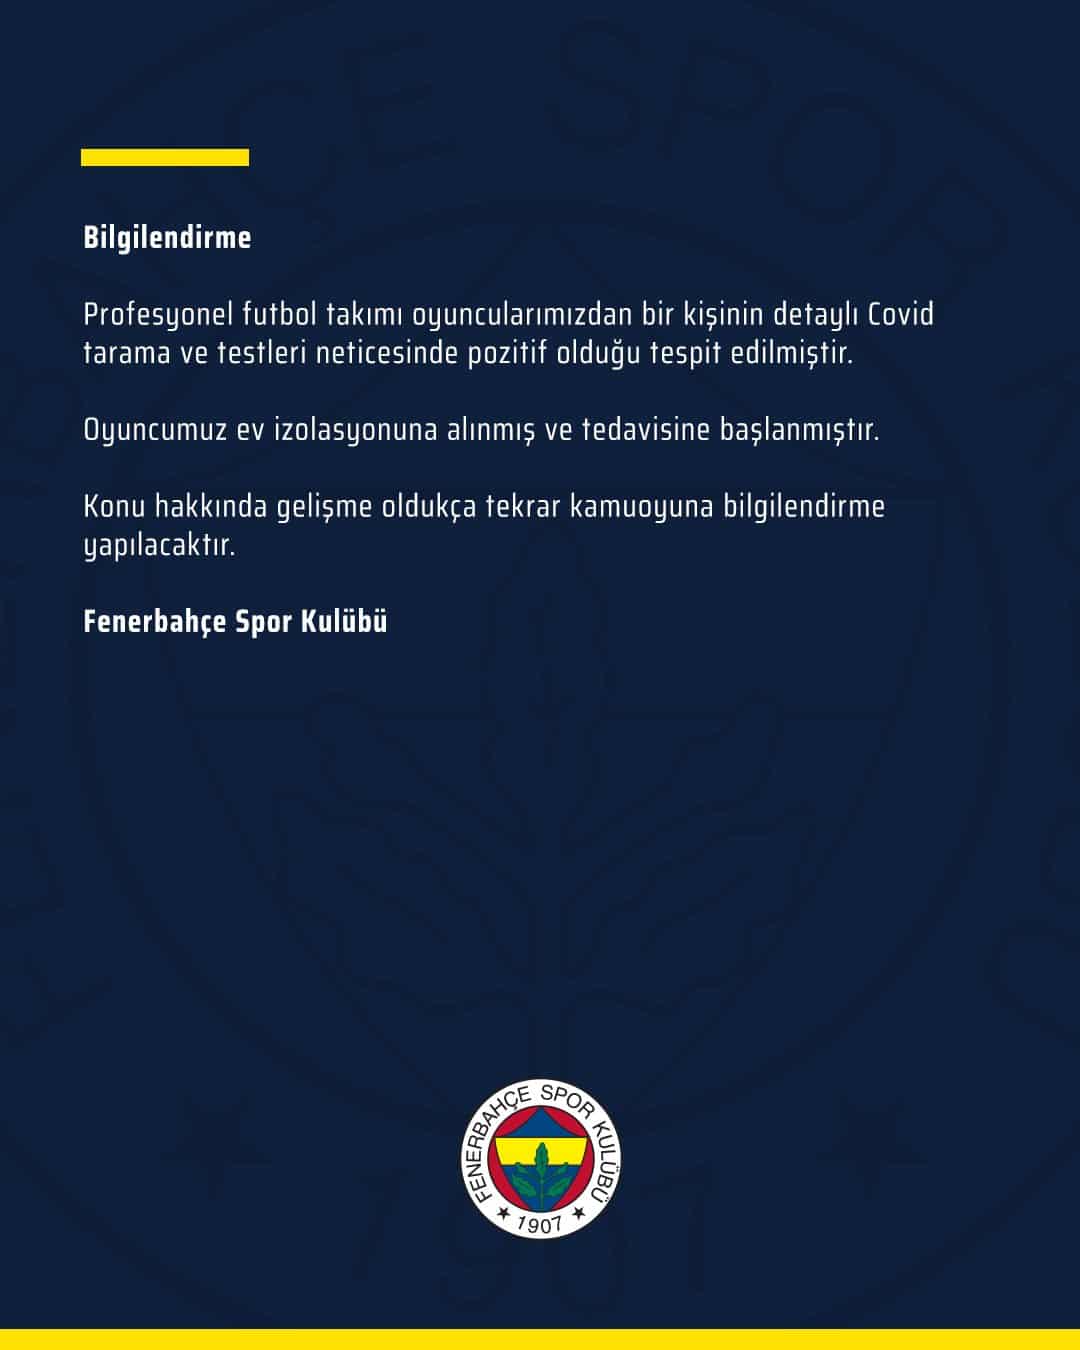 Fenerbahçe Yeni Bir Koronavirüs Vakası ile Karşı Karşıya!